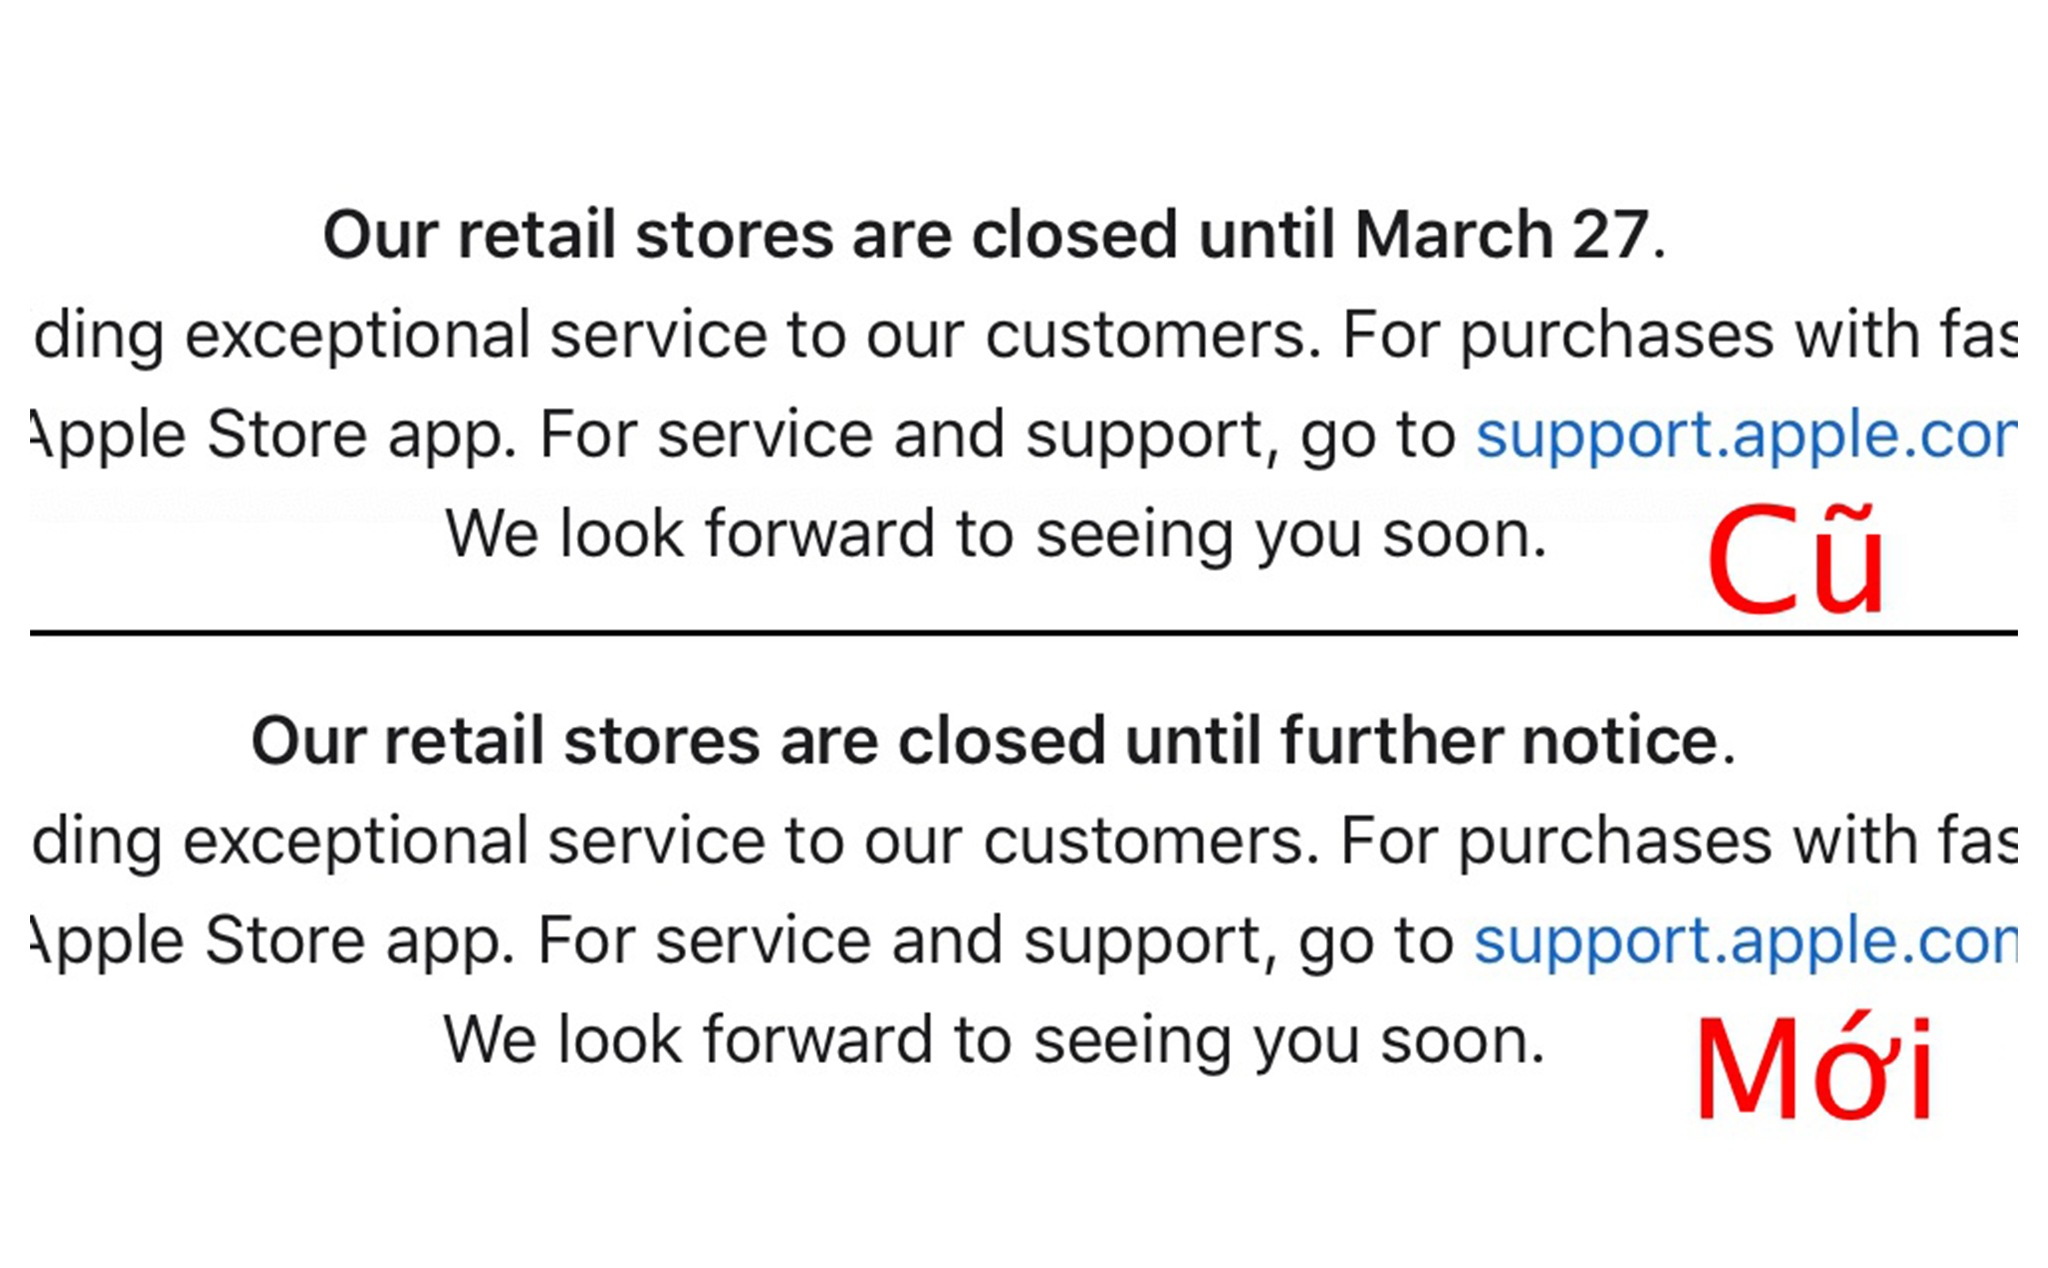 Apple đổi ngày đóng cửa toàn bộ cửa hàng "đến 27/3" thành vô thời hạn